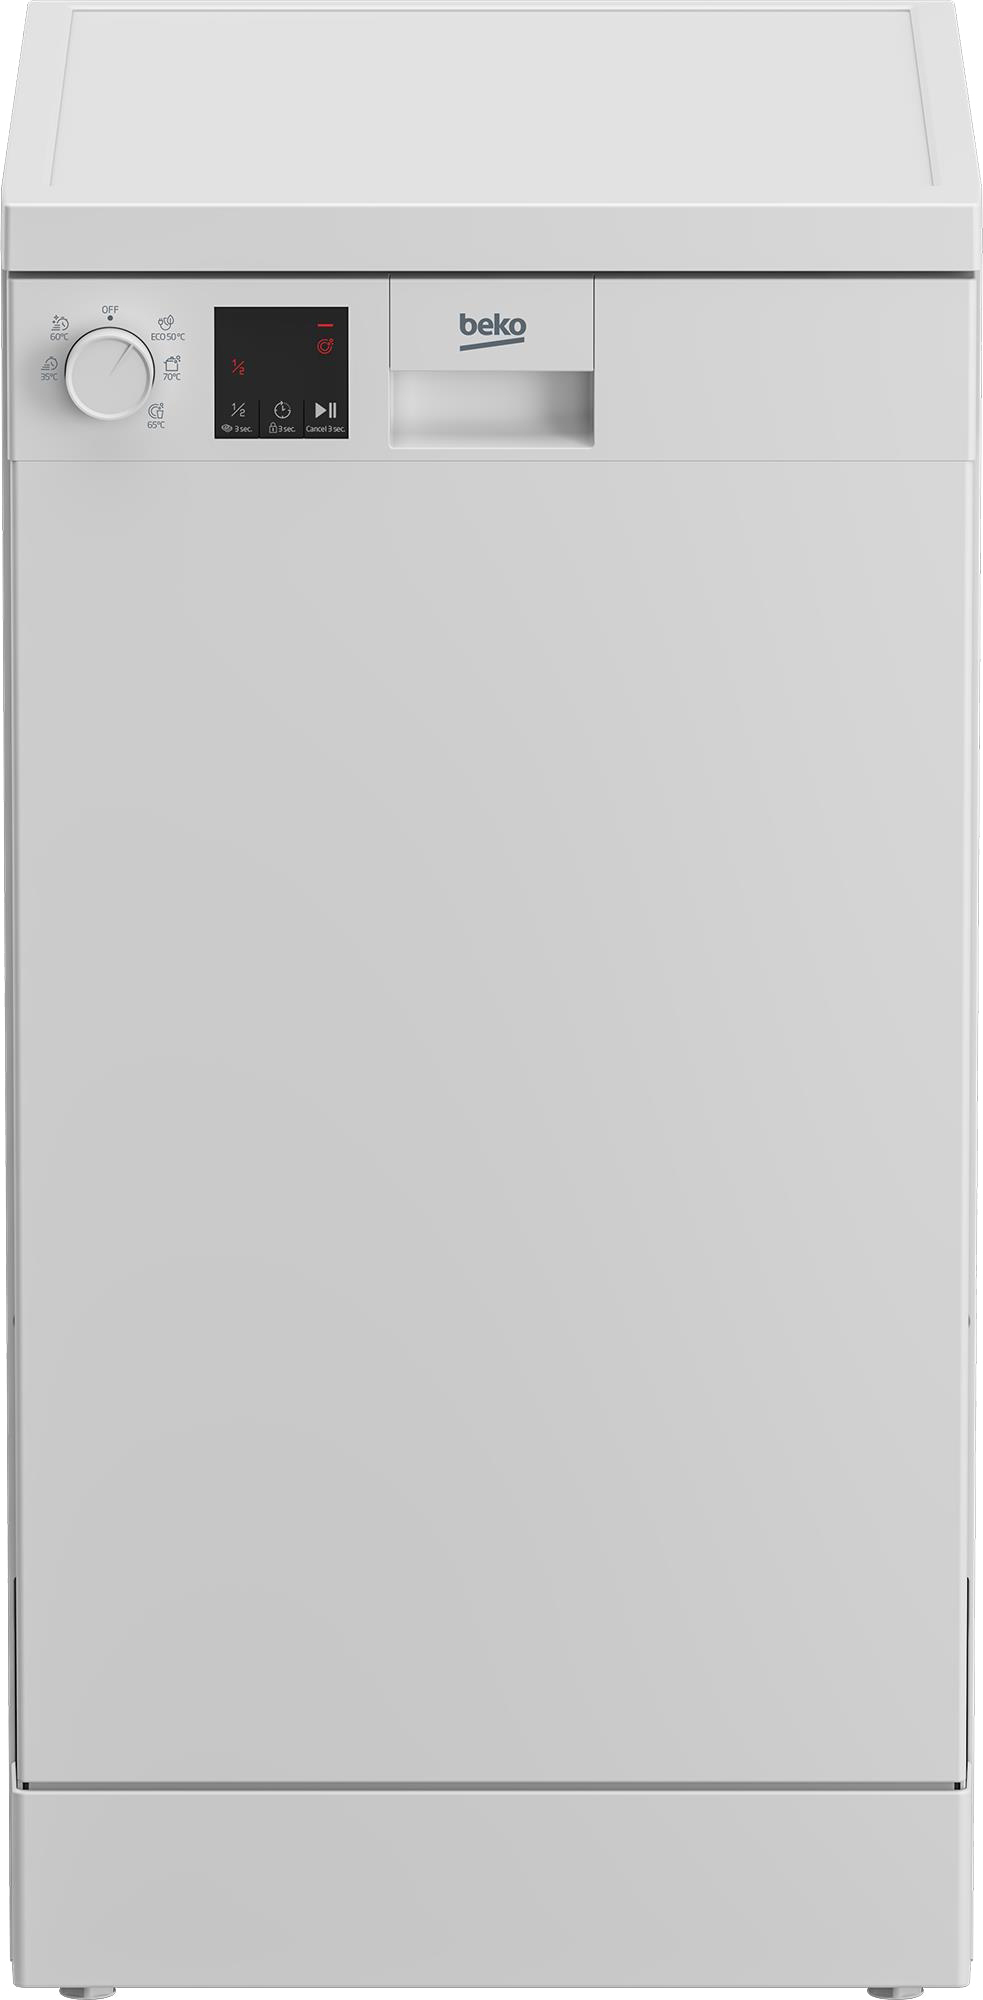 Посудомоечная машина Beko DVS05023W в интернет-магазине, главное фото